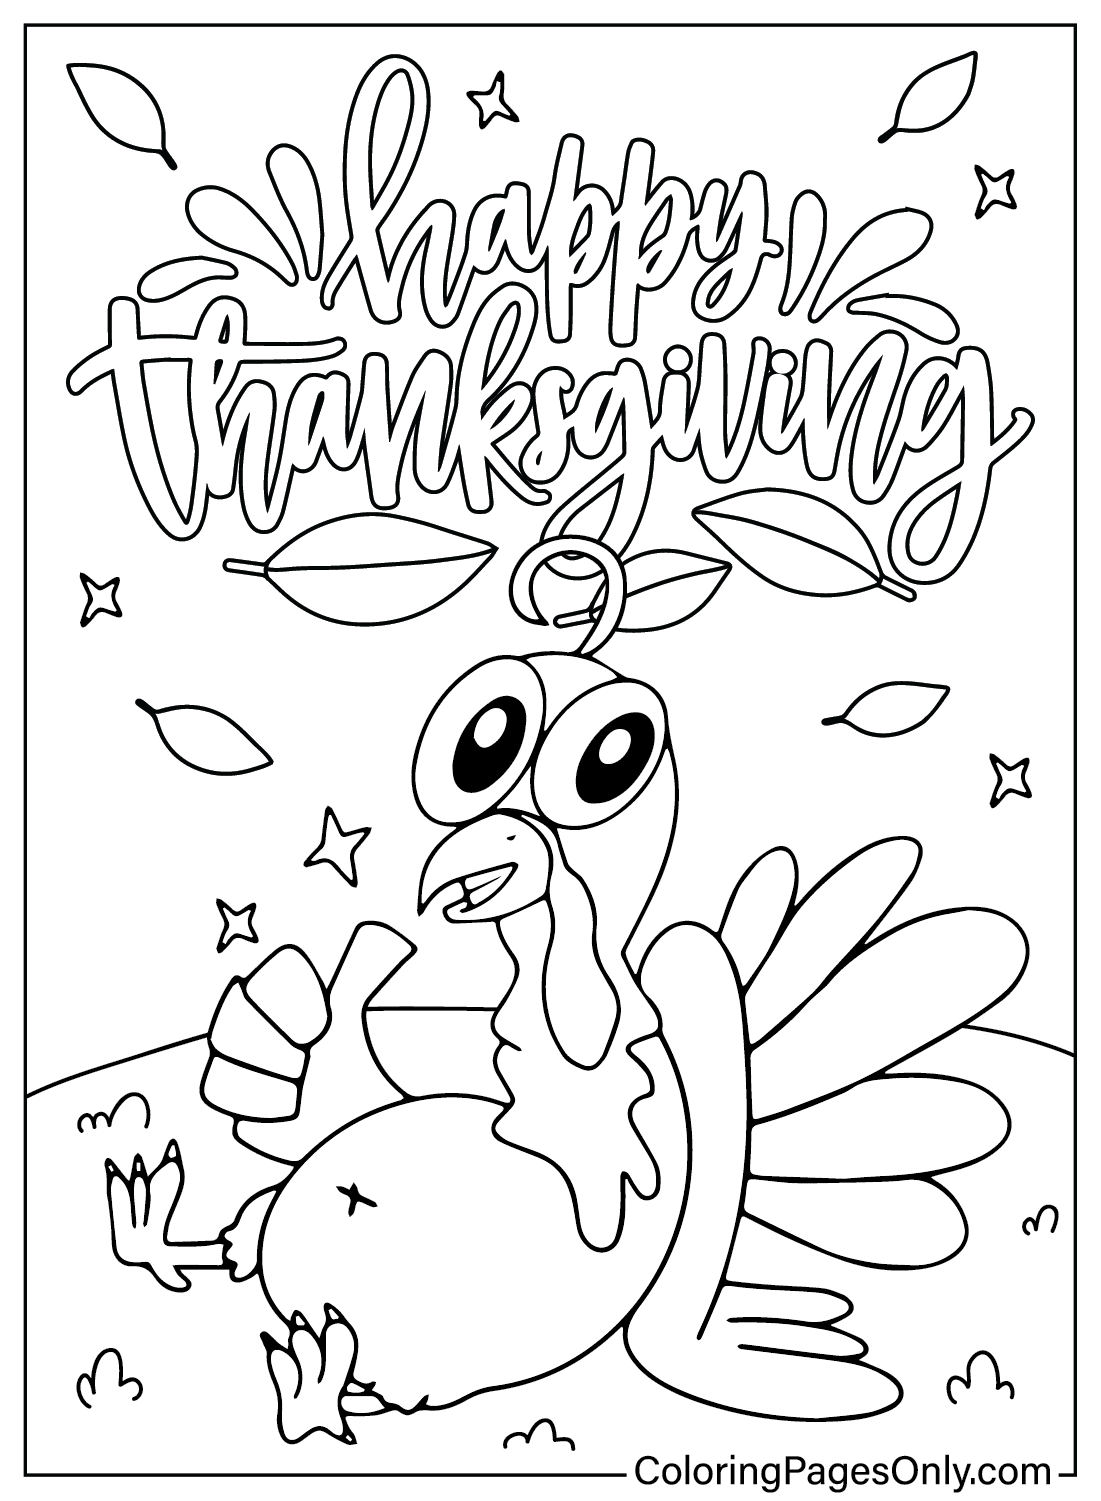 Página en color de dibujos animados de Acción de Gracias de Dibujos animados de Acción de Gracias